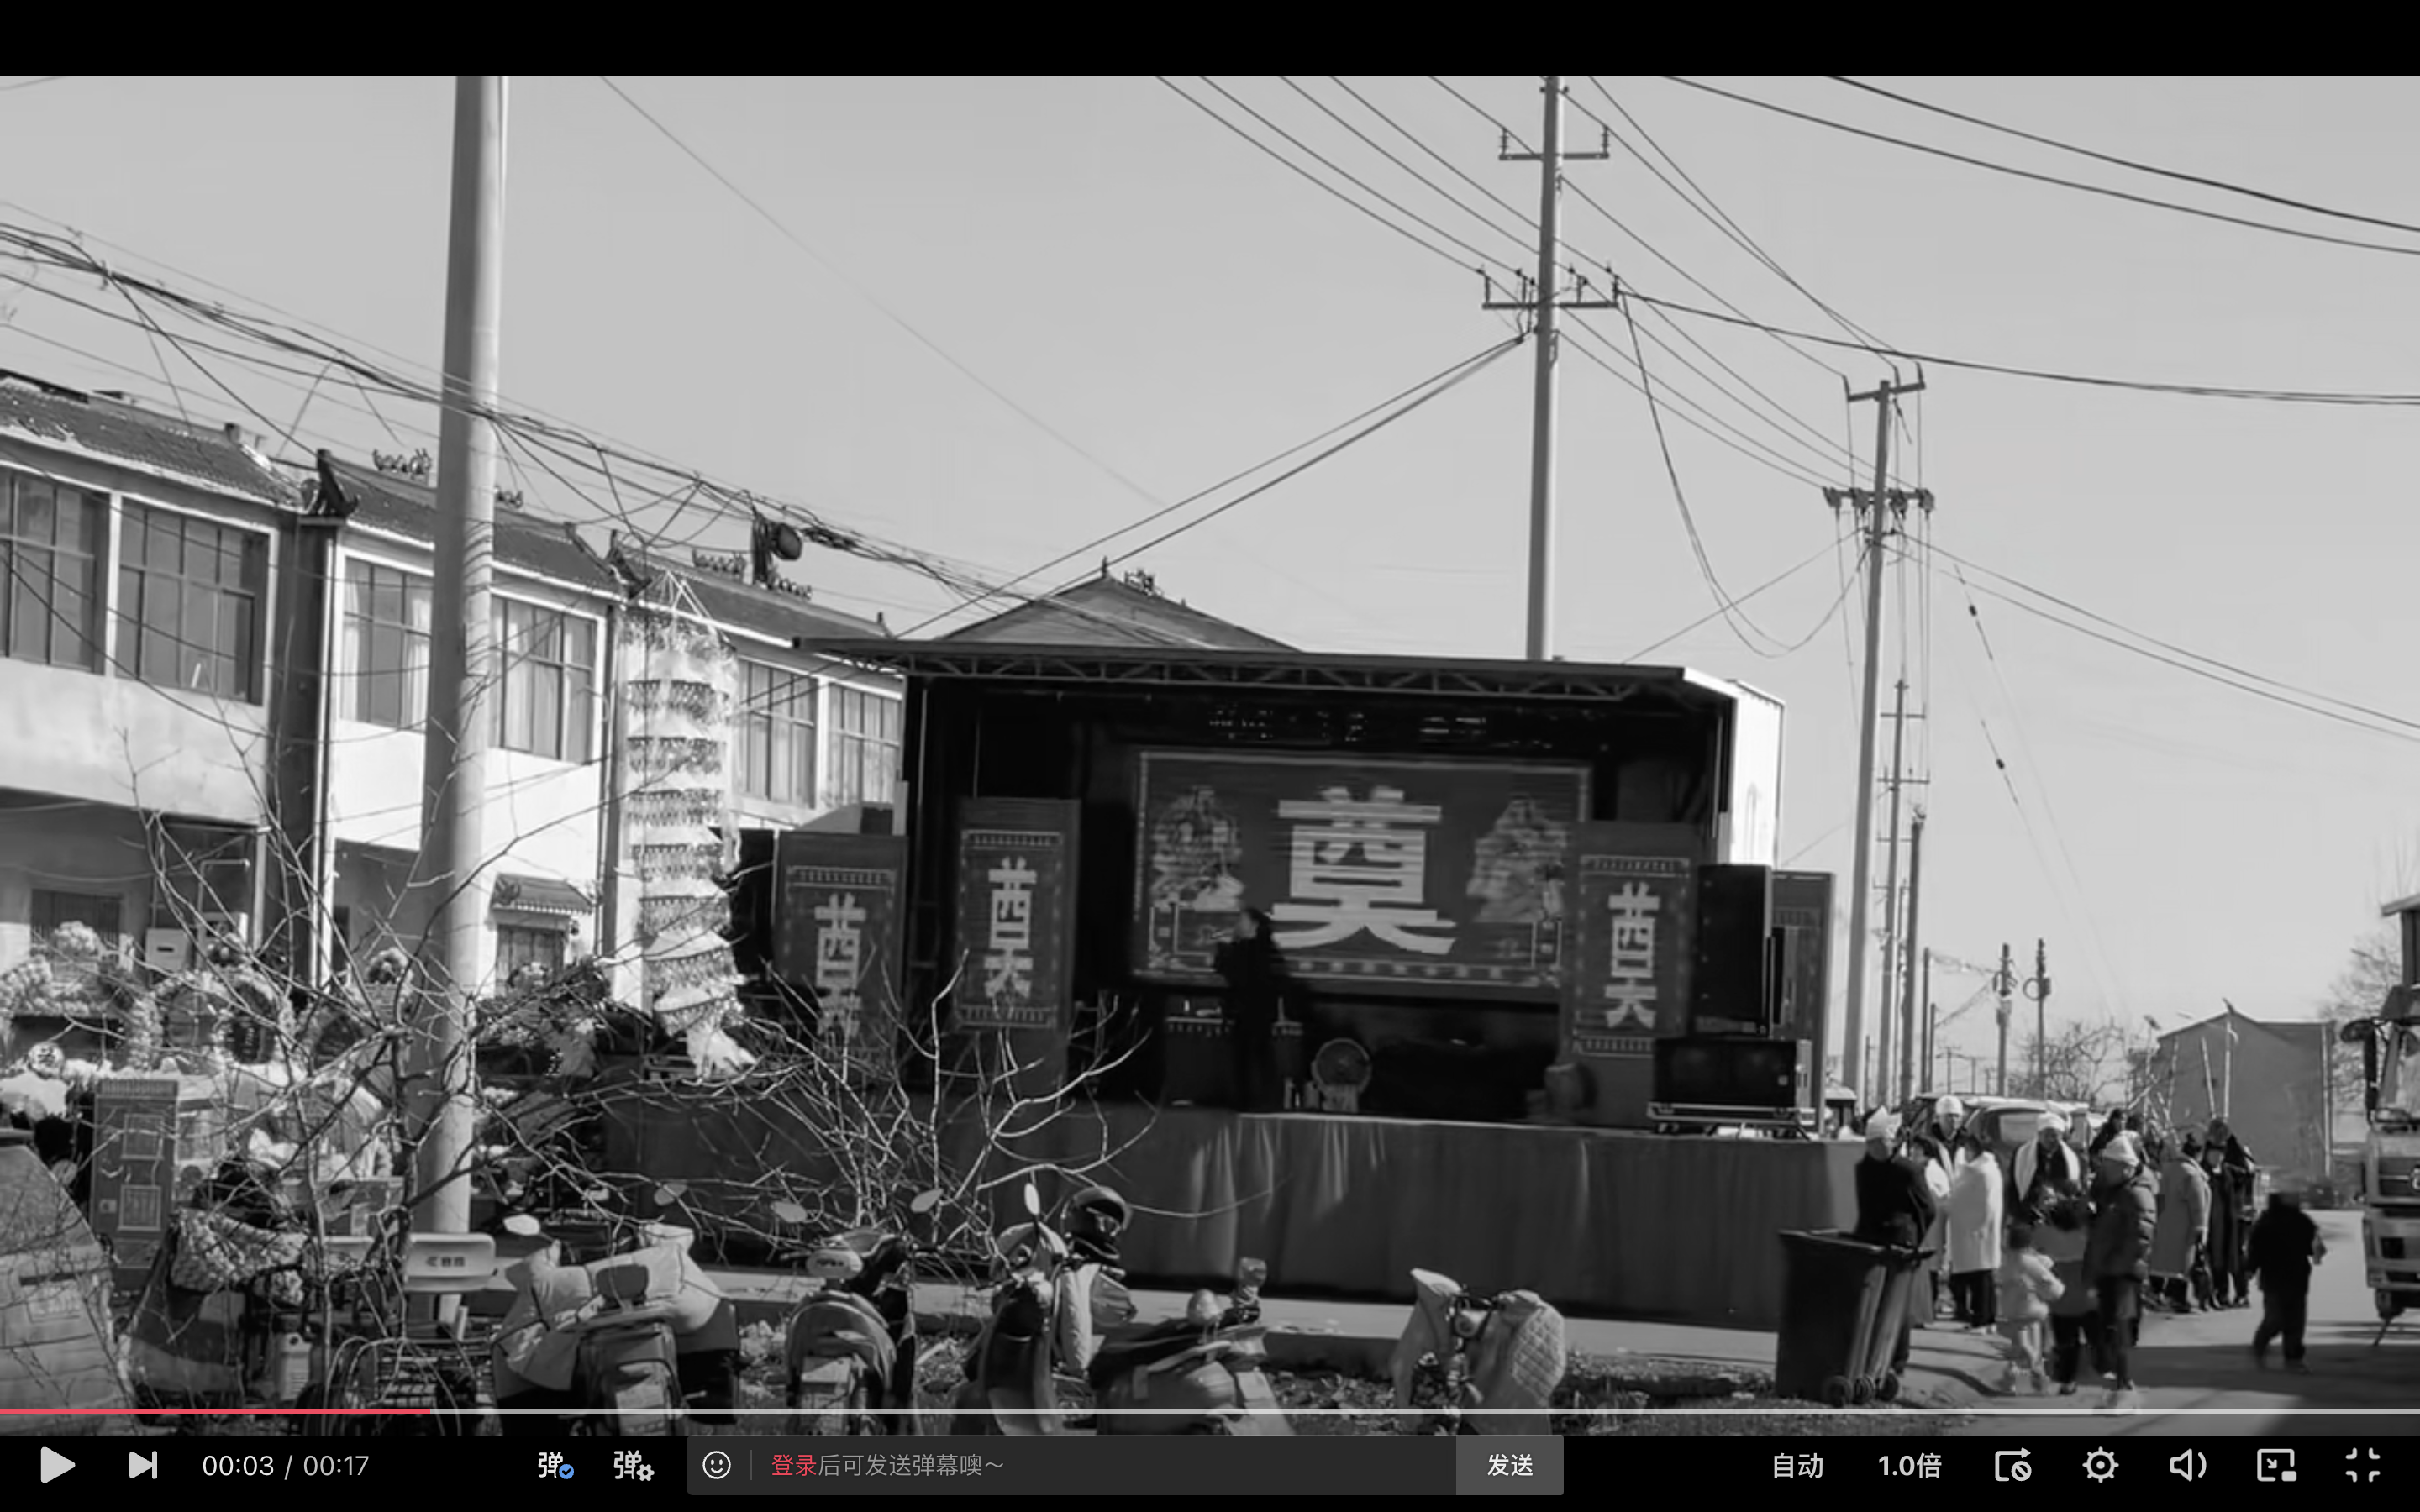 Hôm 16/02, tài khoản mạng “Chân Tuyển Sáng Ý” (甄选创意) ở Giang Tô đã phát video tiết lộ tình cảnh đám tang ở ngôi làng địa phương. (Ảnh chụp màn hình video)